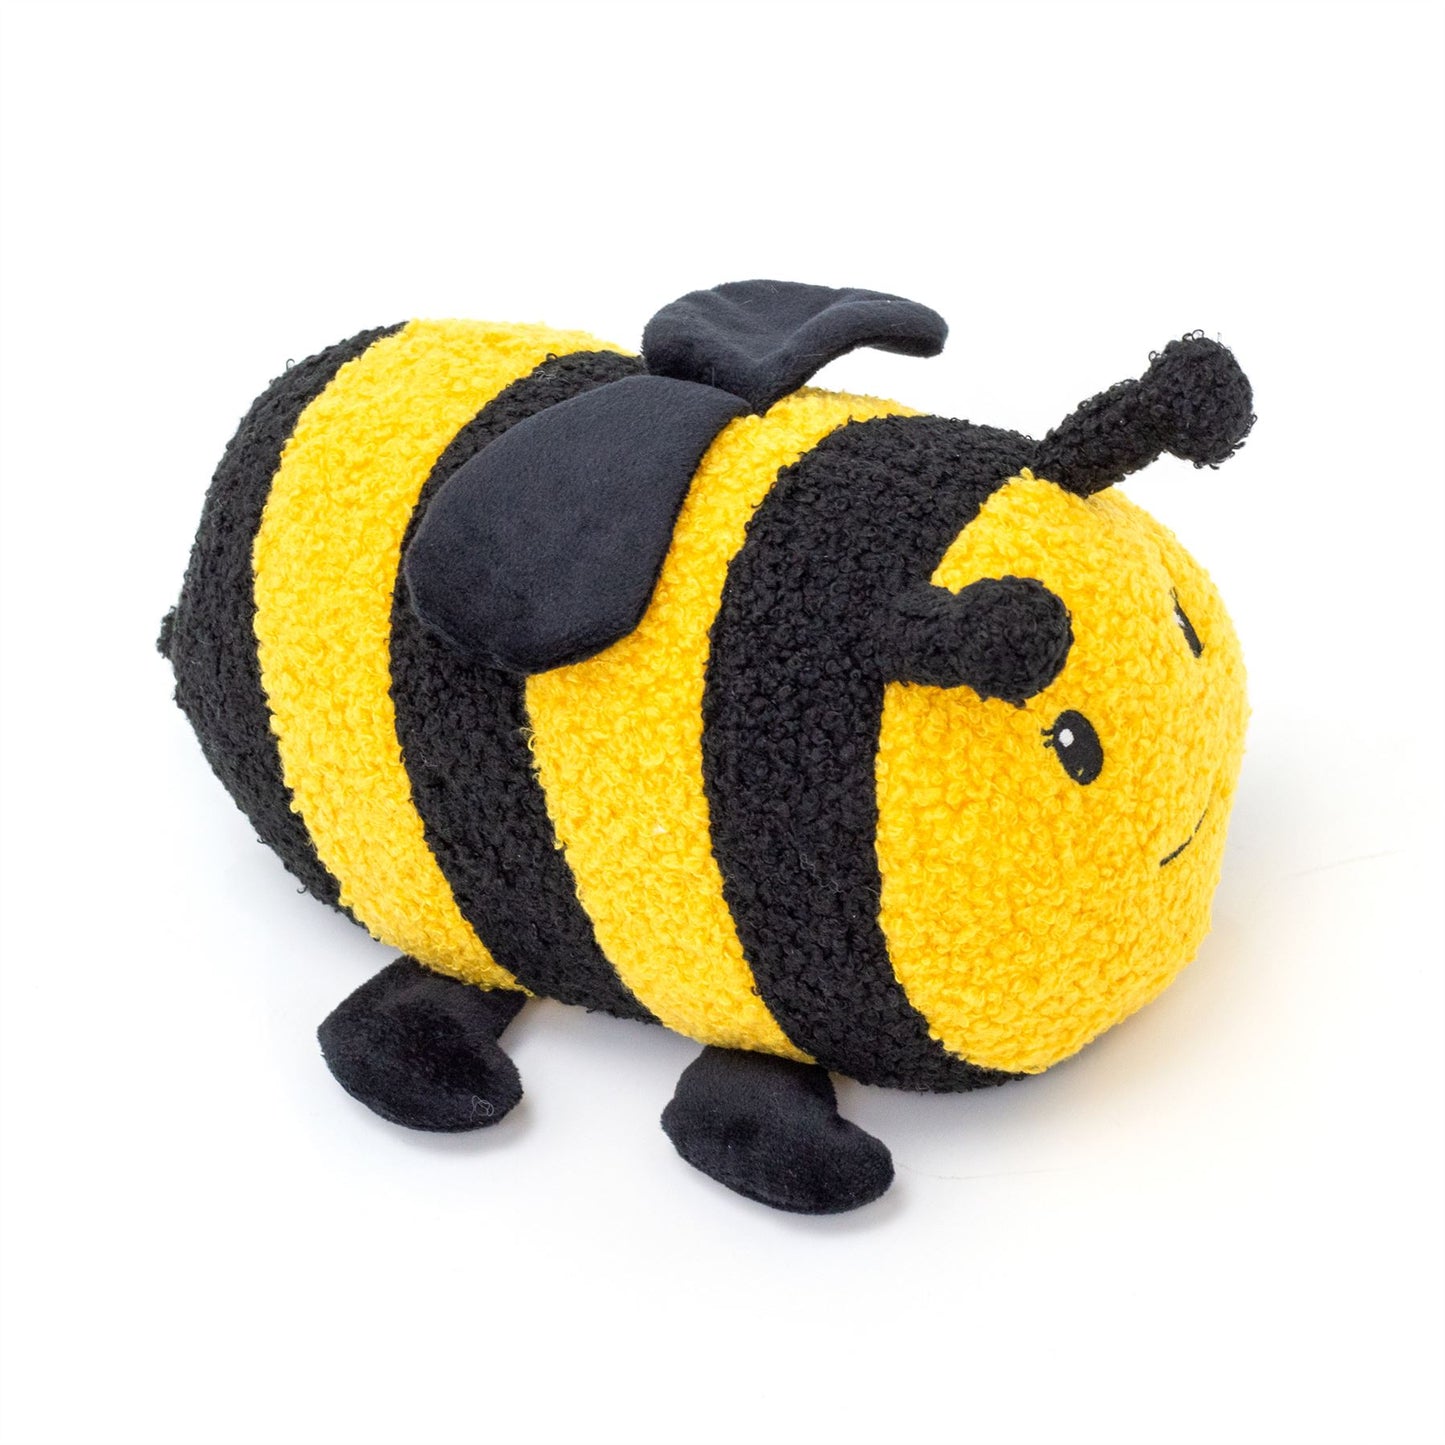 Amelia Bumblebee Doorstop | Novelty Plush Fabric Honey Bee Shaped Door Stop